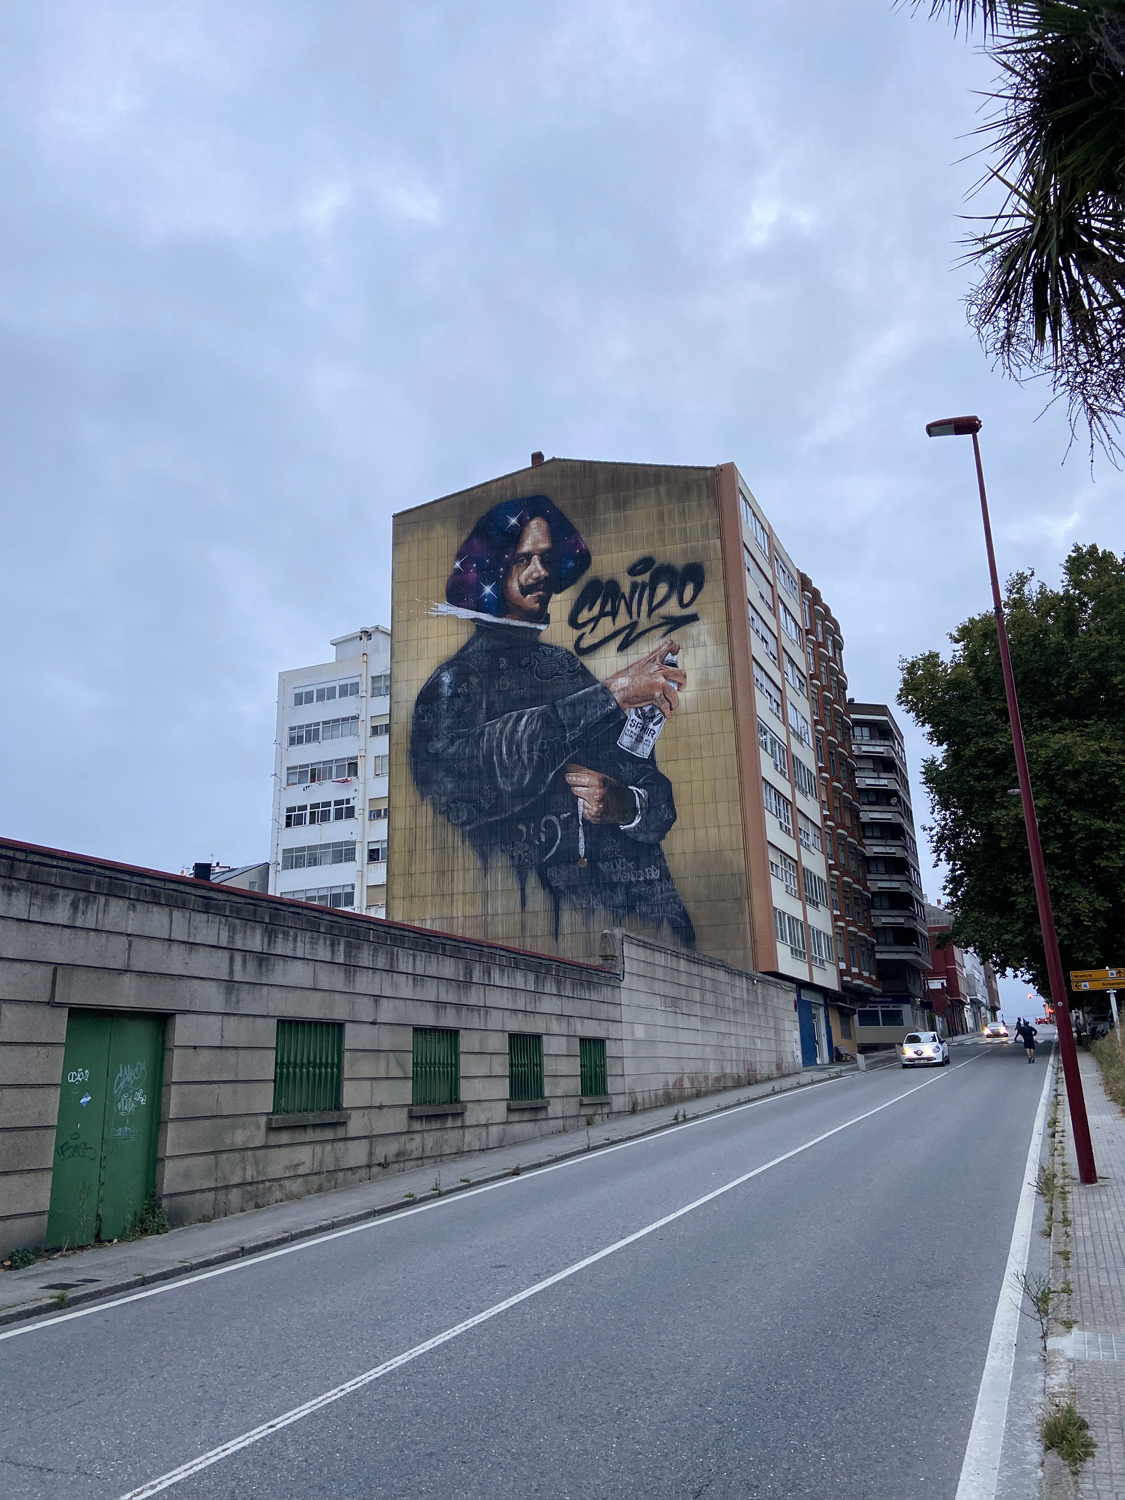 arte urbano, Sfhir, Meninas de Canido, Galicia